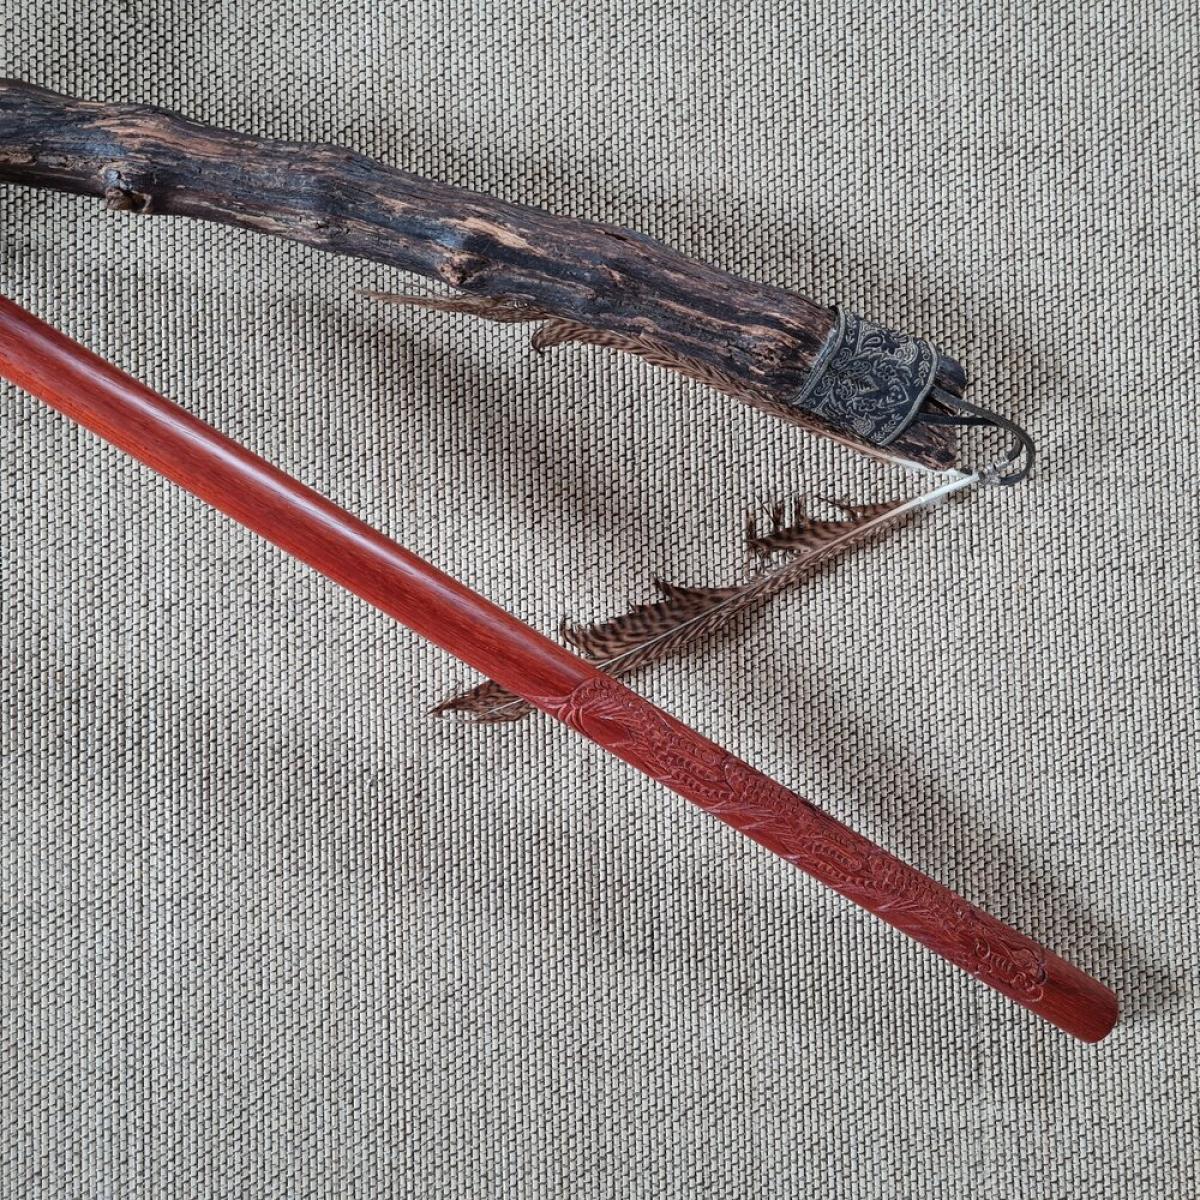 Jo-Stab aus Balayong mit Drachenschnitzerei - Länge 128 cm ➤ www.bokken-shop.de. Passend für Aikido, IaiAdo, Jo-Jutsu, Jodo. Dein Budo-Fachhändler!